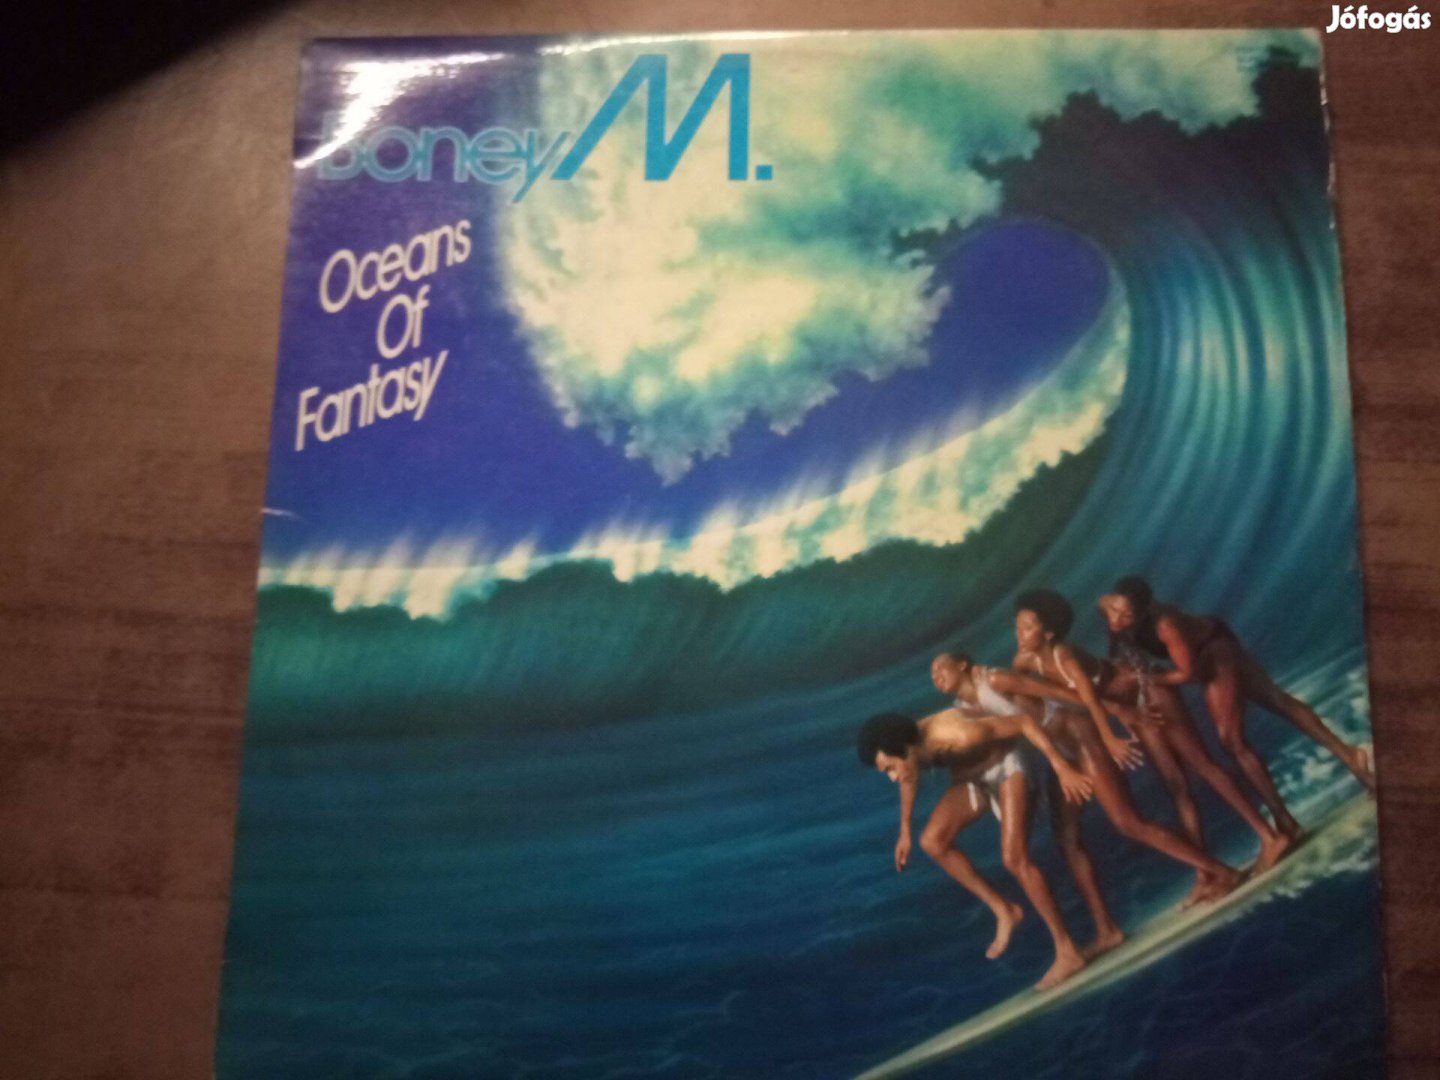 Boney M - Oceans of fantasy - bakelit nagylemez